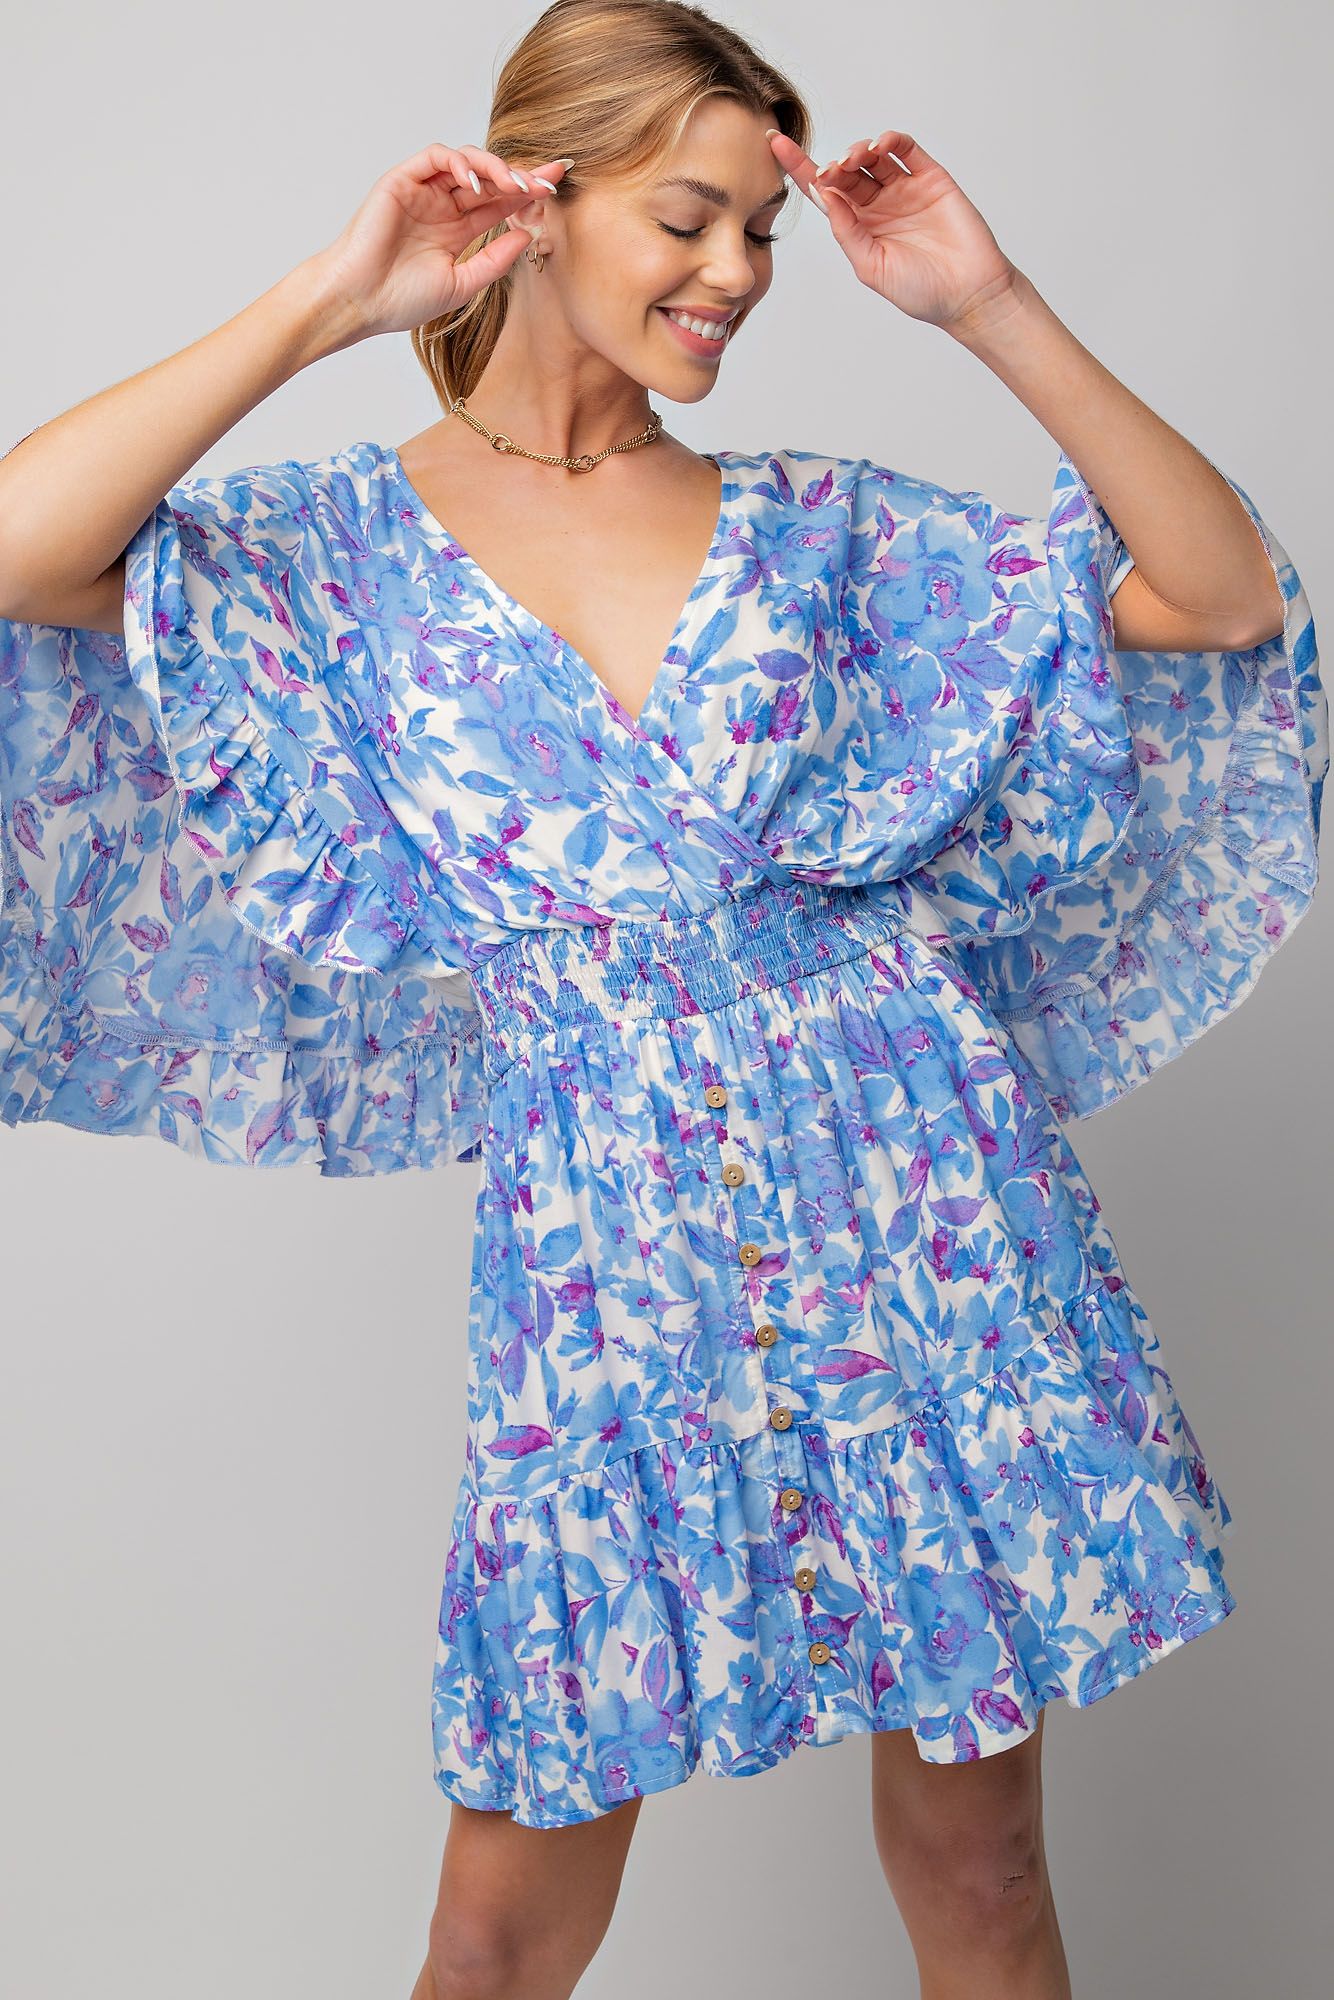 Sunday Best Floral Print Romper Dress in Peri Blue